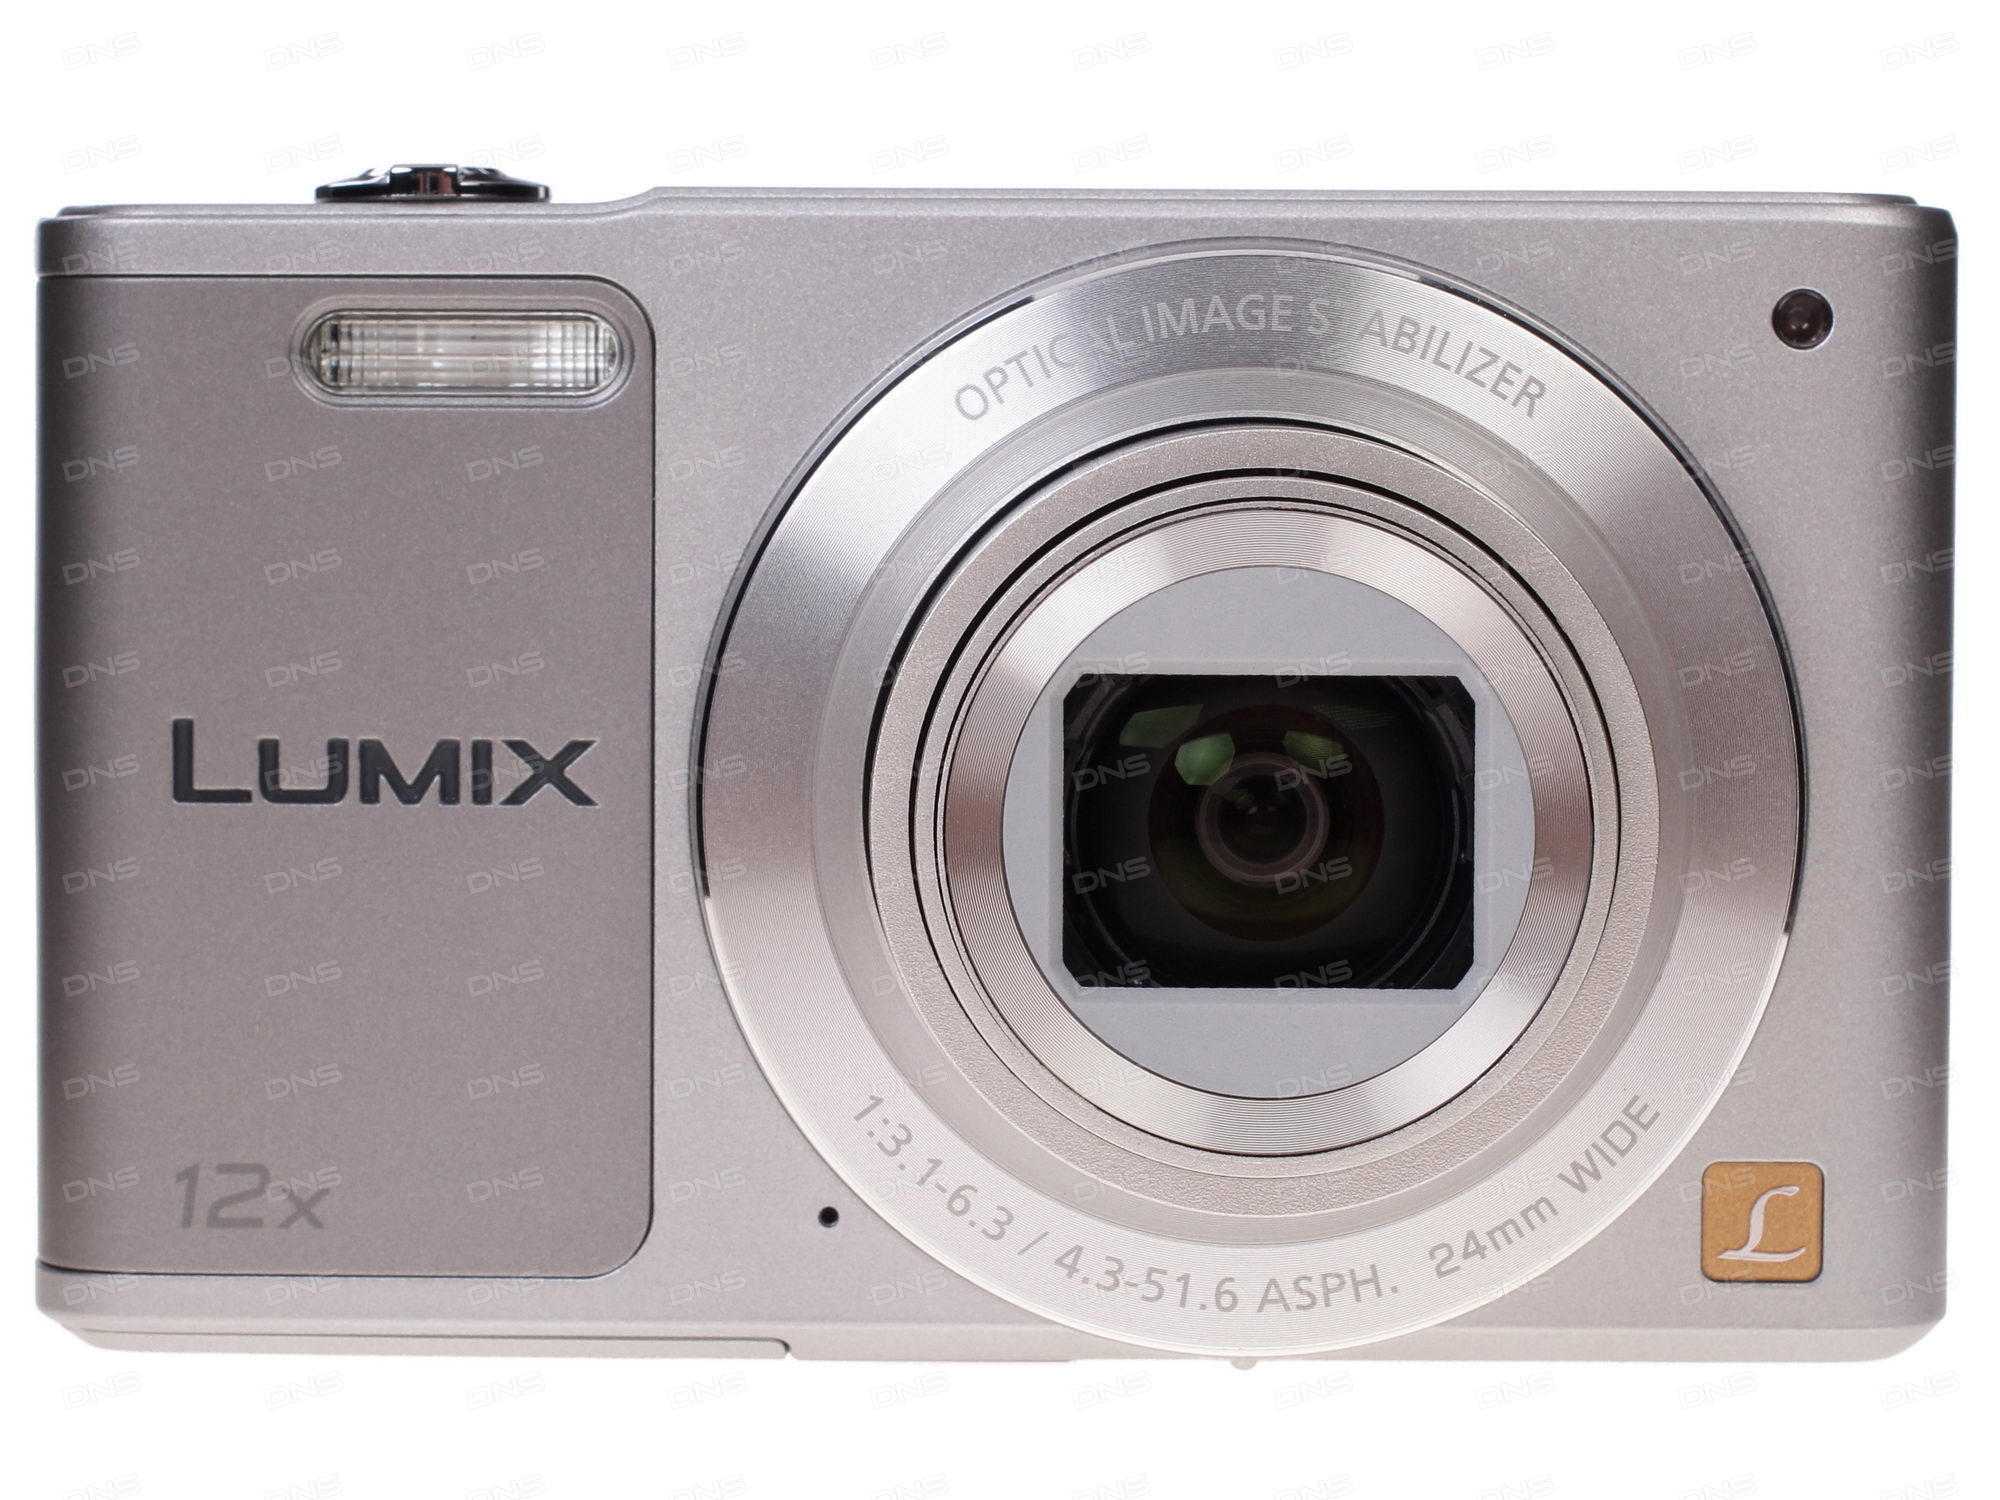 Фотоаппарат панасоник lumix dmc-lz3 купить недорого в москве, цена 2021, отзывы г. москва